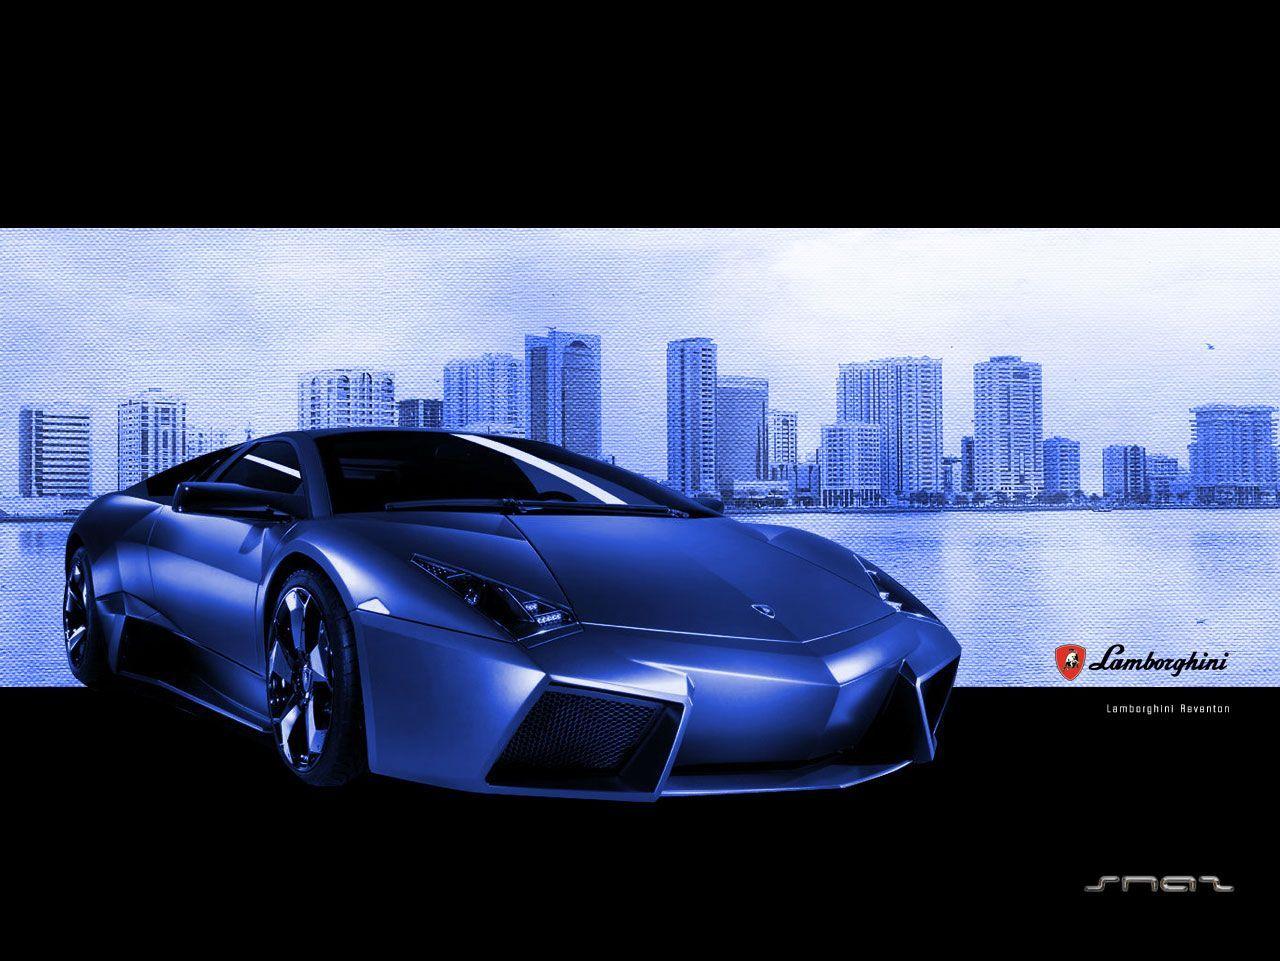 Free Lamborghini for desktop wallpaper for Windows, iPhone 5